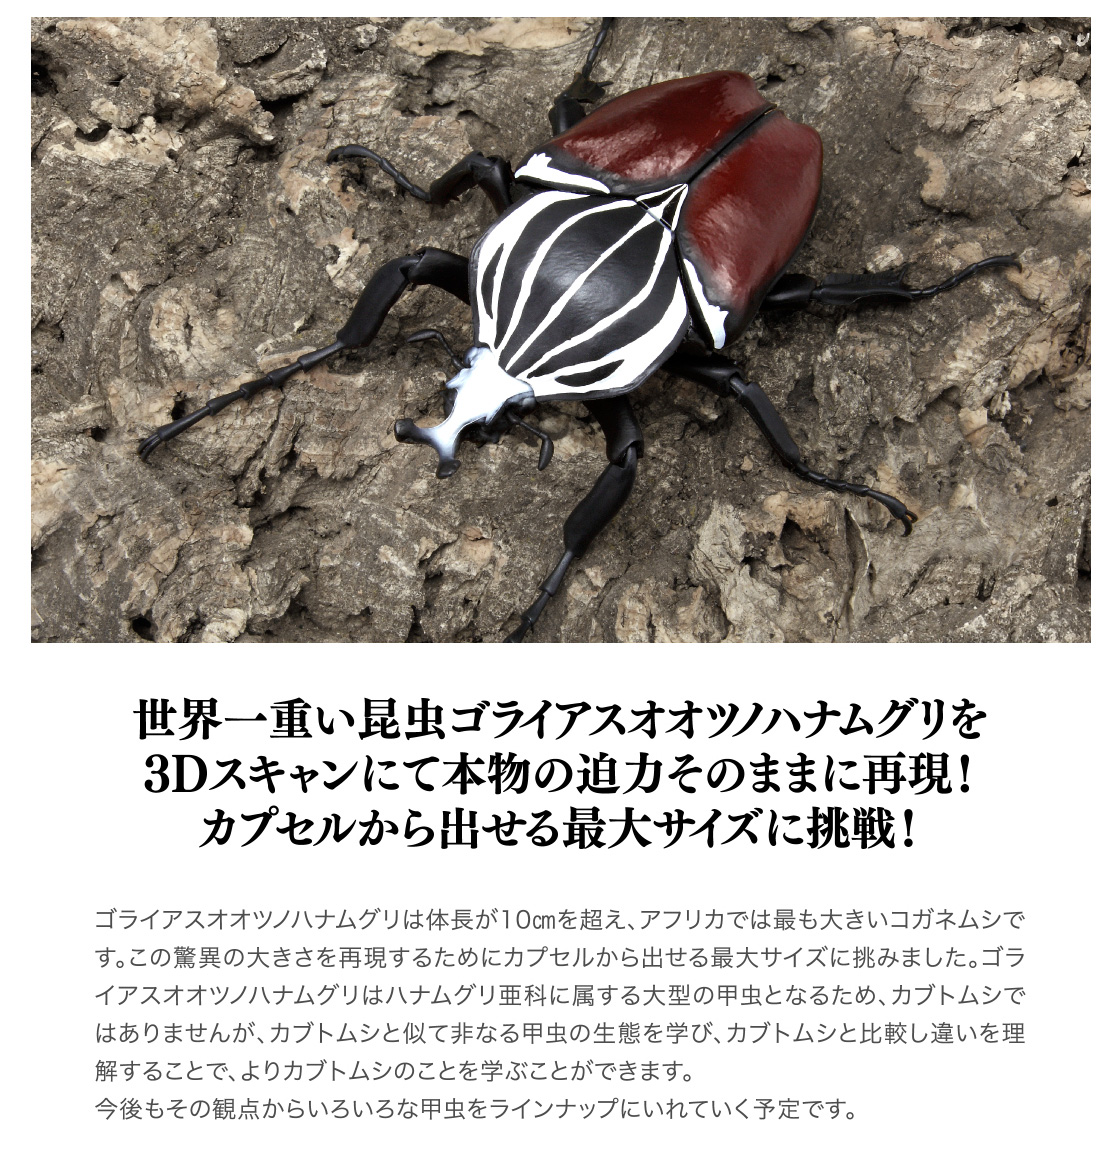 世界一重い昆虫ゴライアスオオツノハナムグリを3Dスキャンにて本物の迫力そのままに再現！カプセルから出せる最大サイズに挑戦！